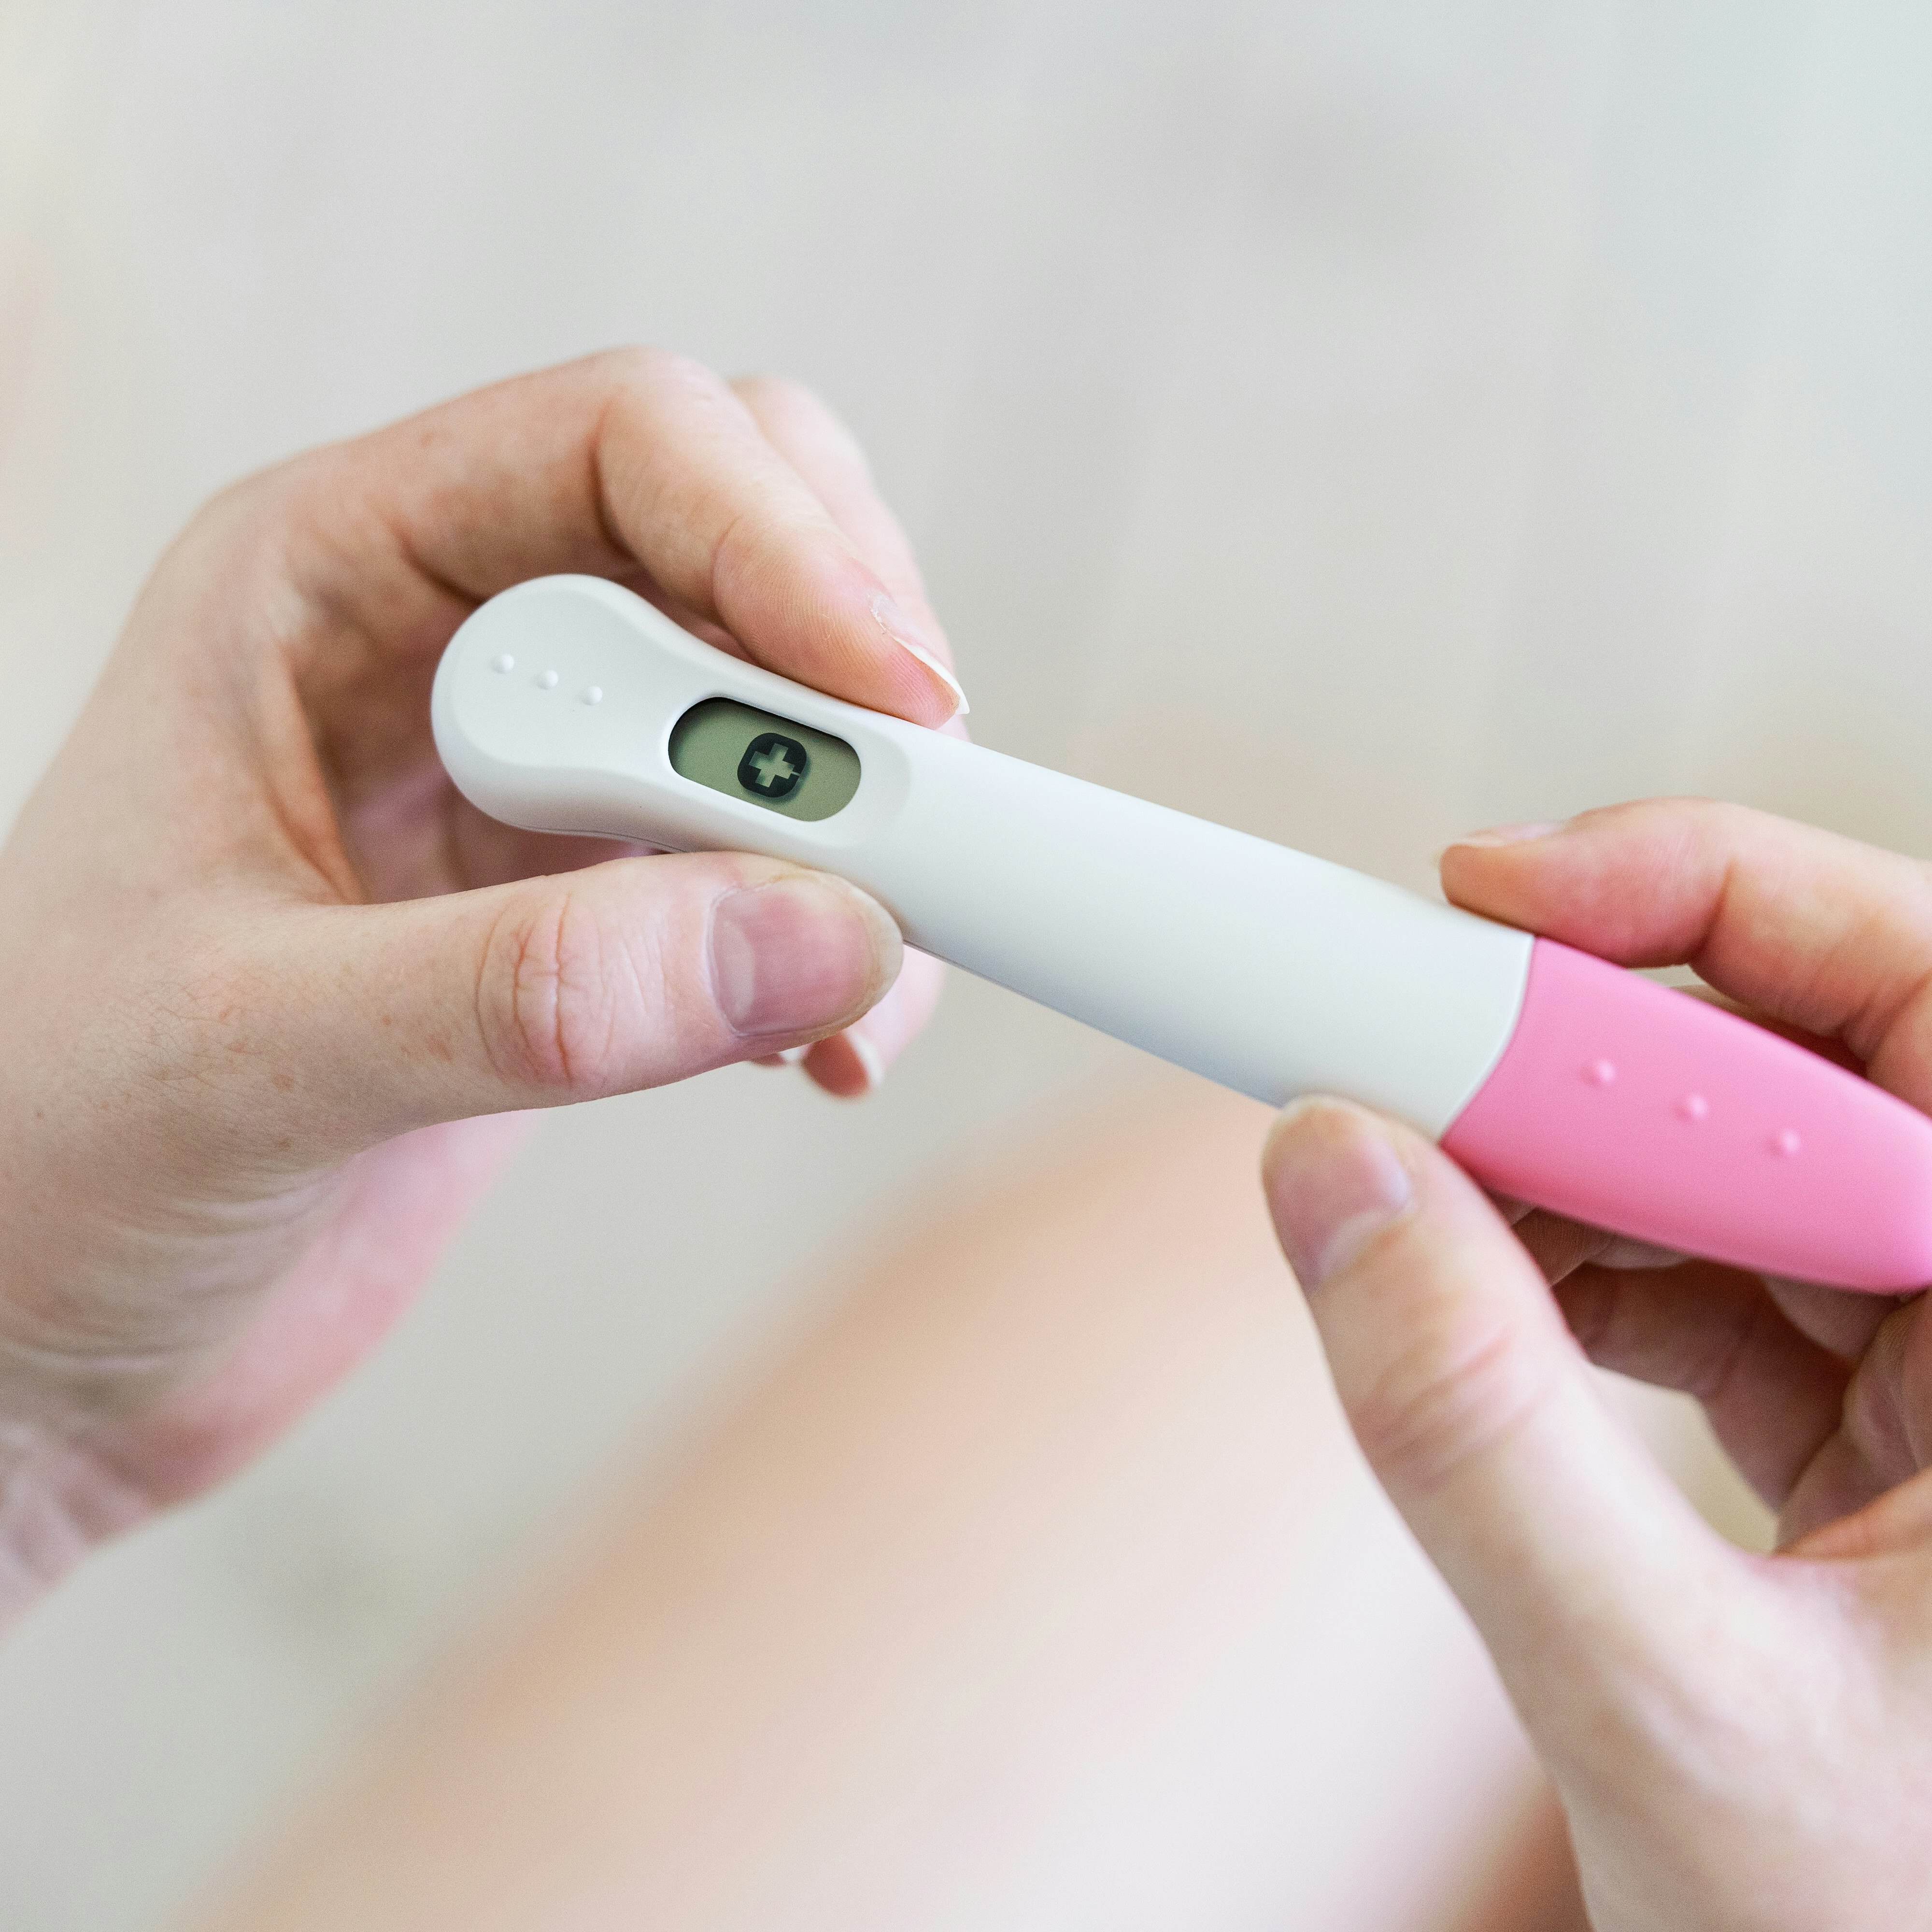 Kvinde holder en positiv graviditetstest, fredag den 26. juli 2019.